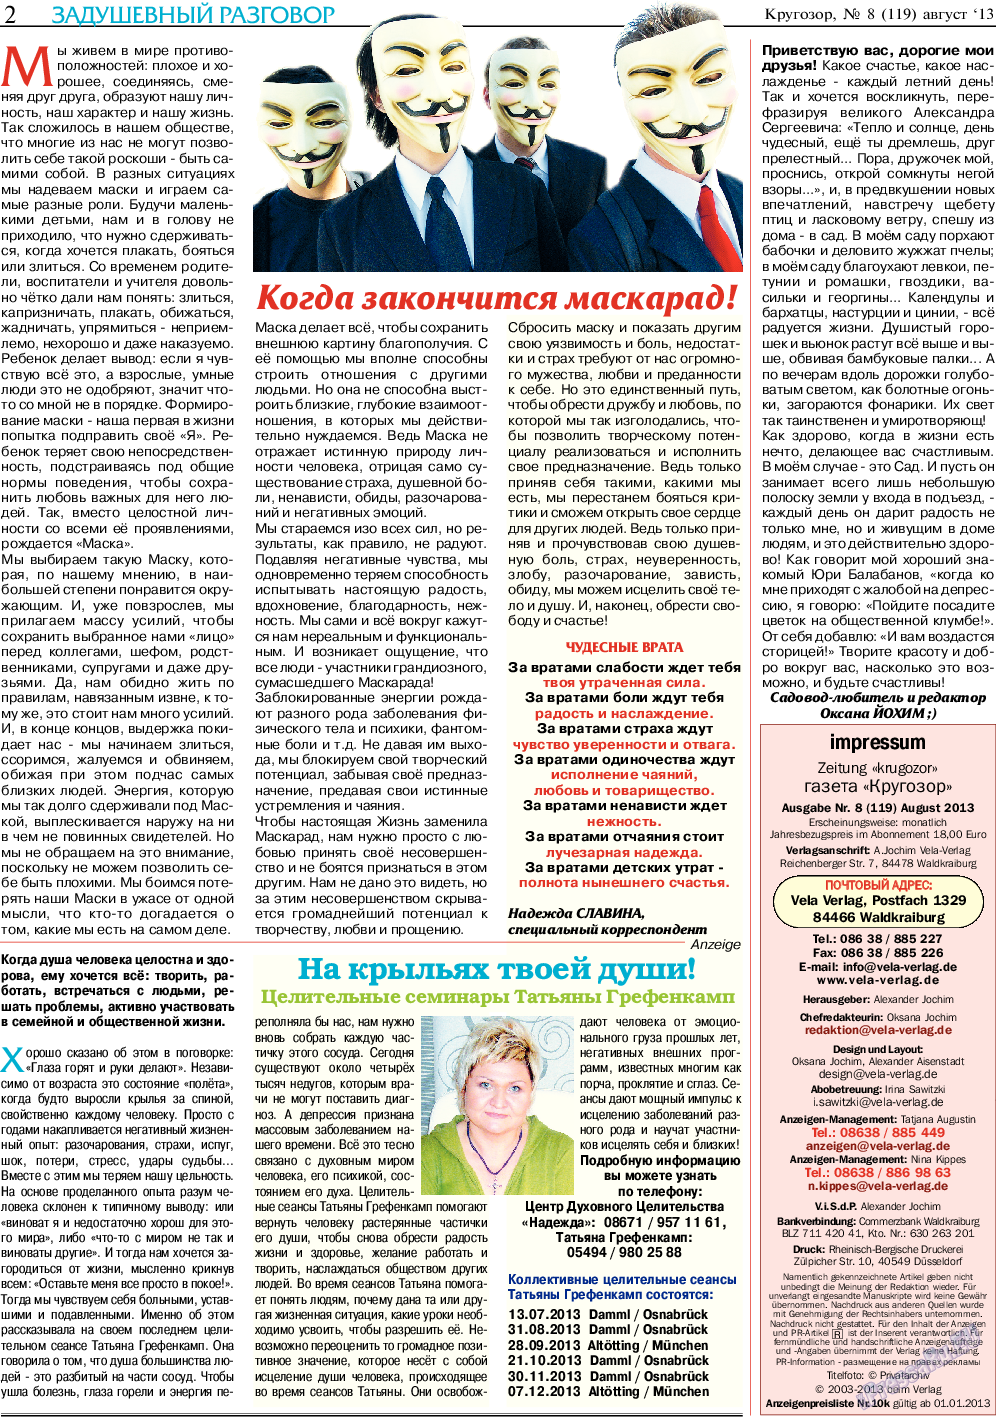 Кругозор (газета). 2013 год, номер 8, стр. 2